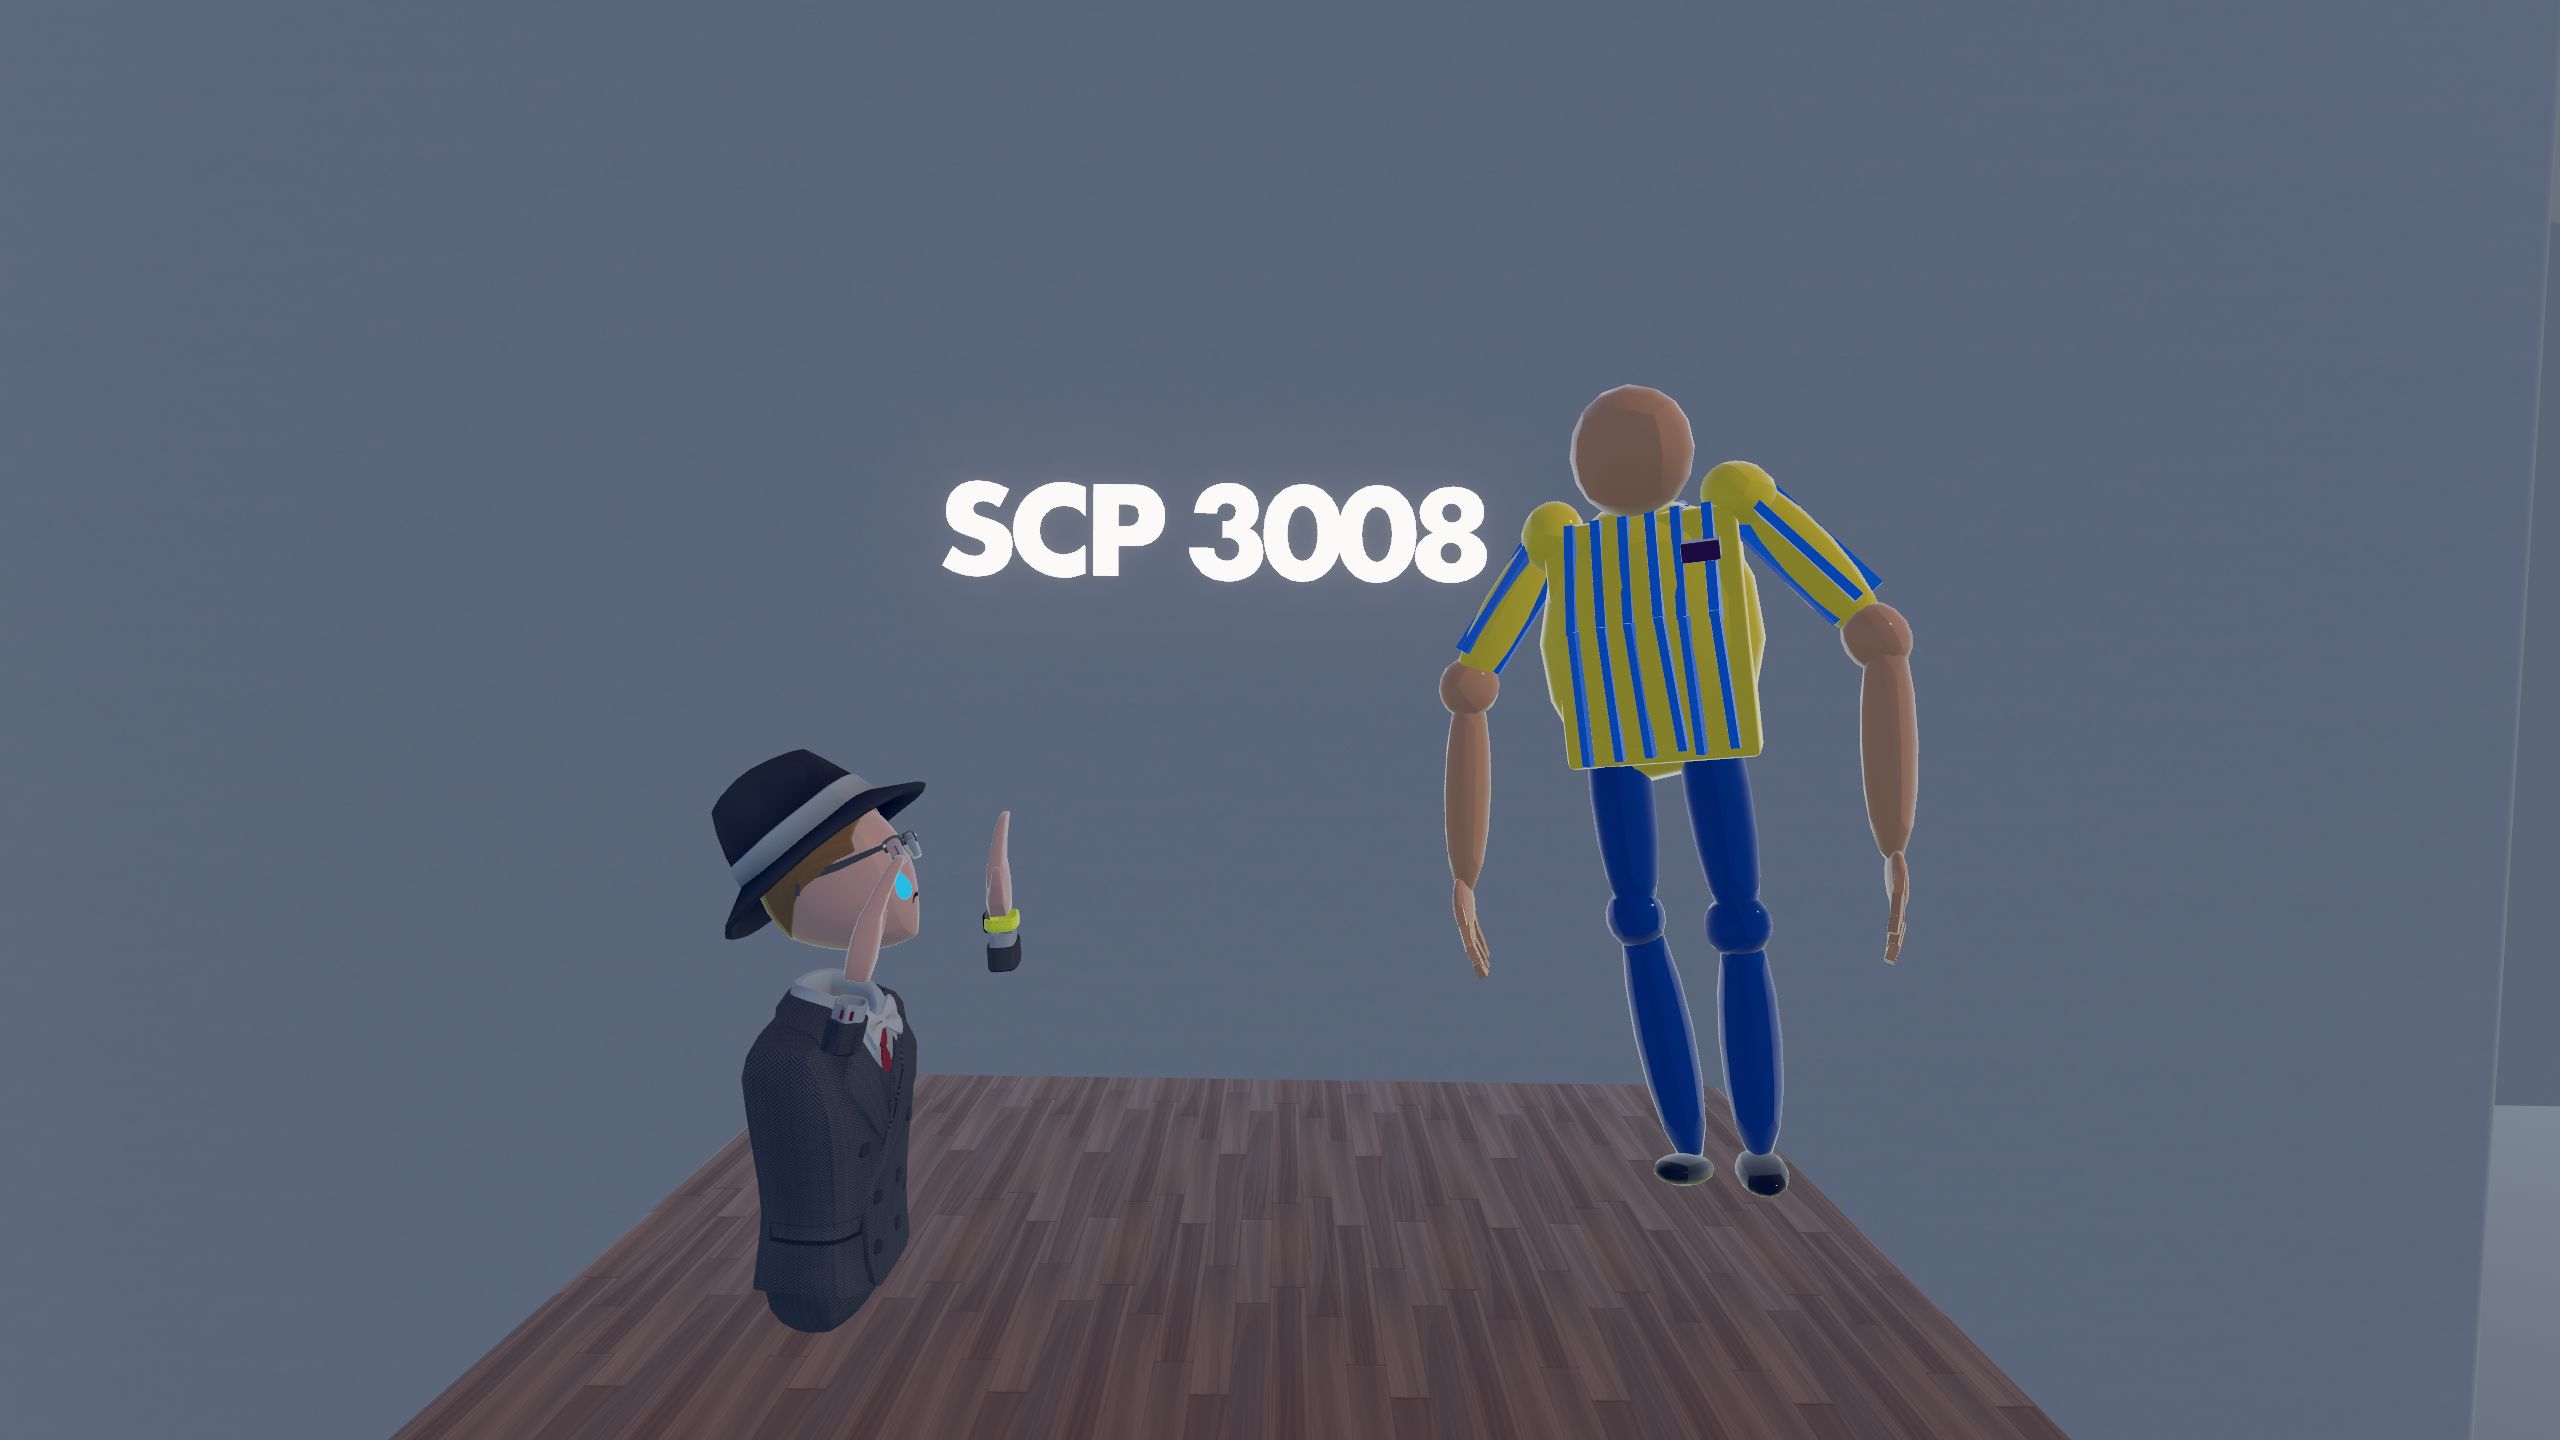 scp-3008 survivors is a legend” : r/SCP